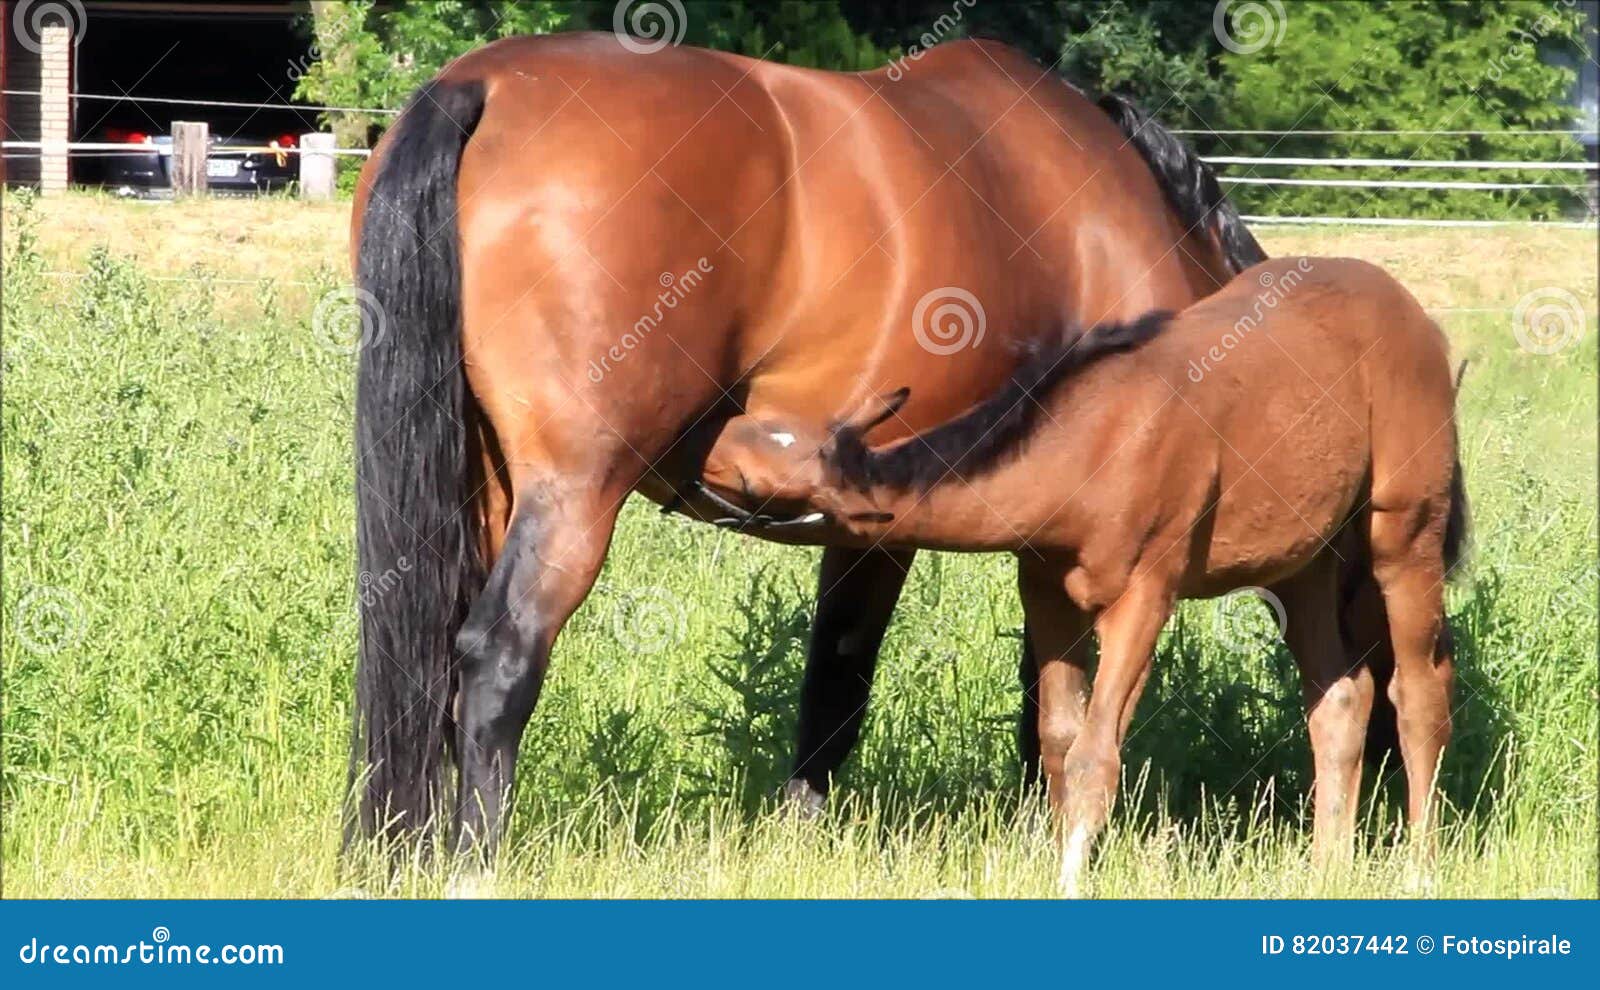 сосать у коня пьет сперму фото 44